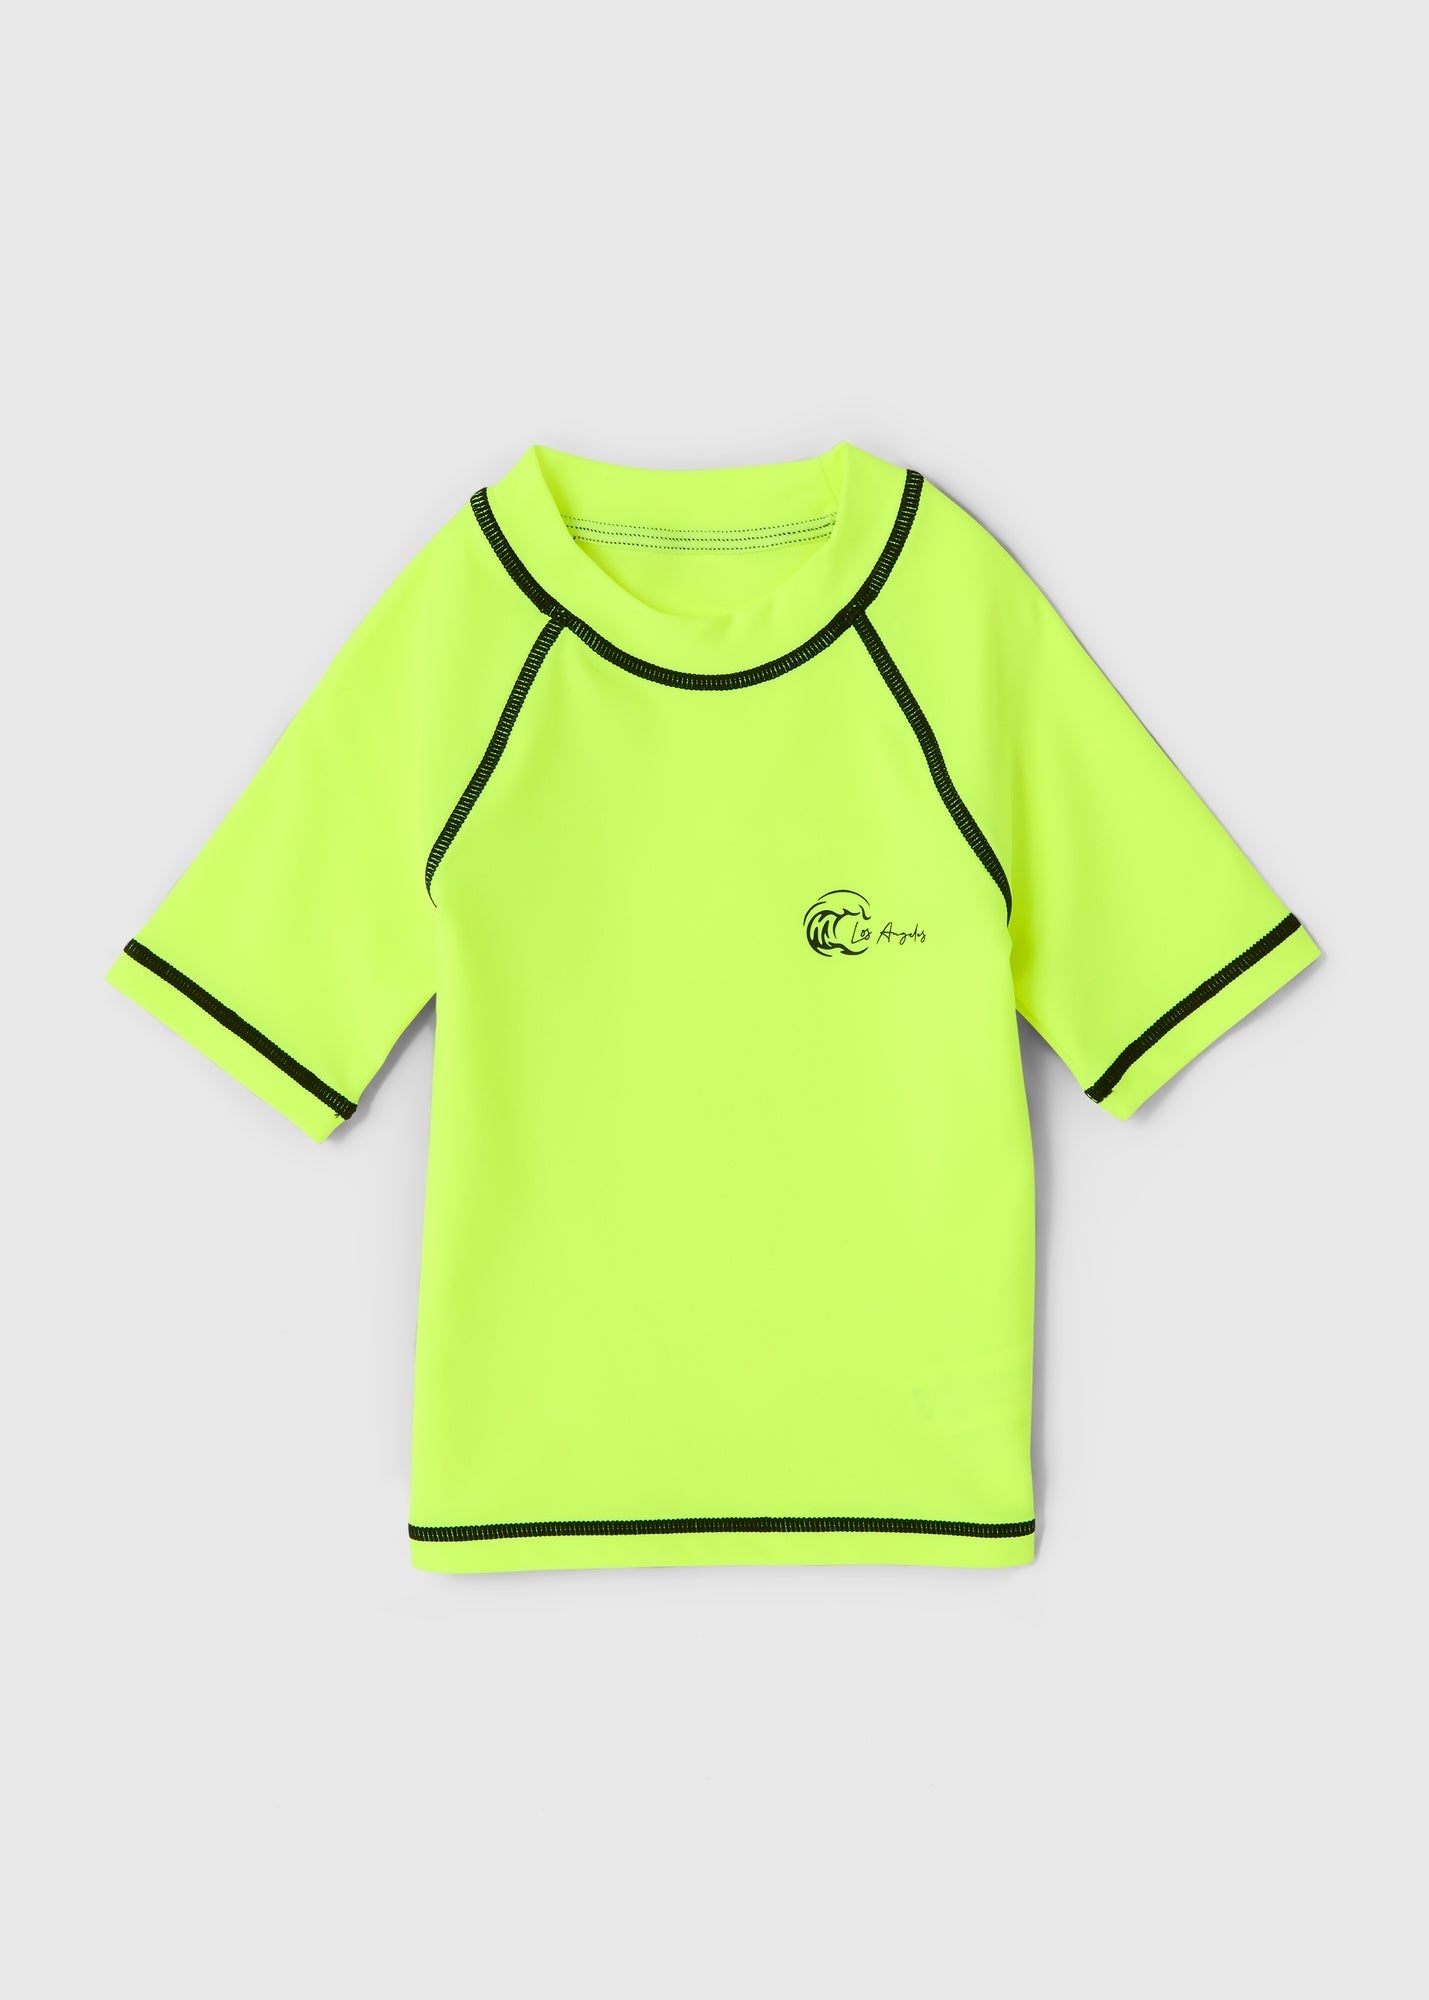 Boys Lime Swim Shirt (1-6yrs)  B368630